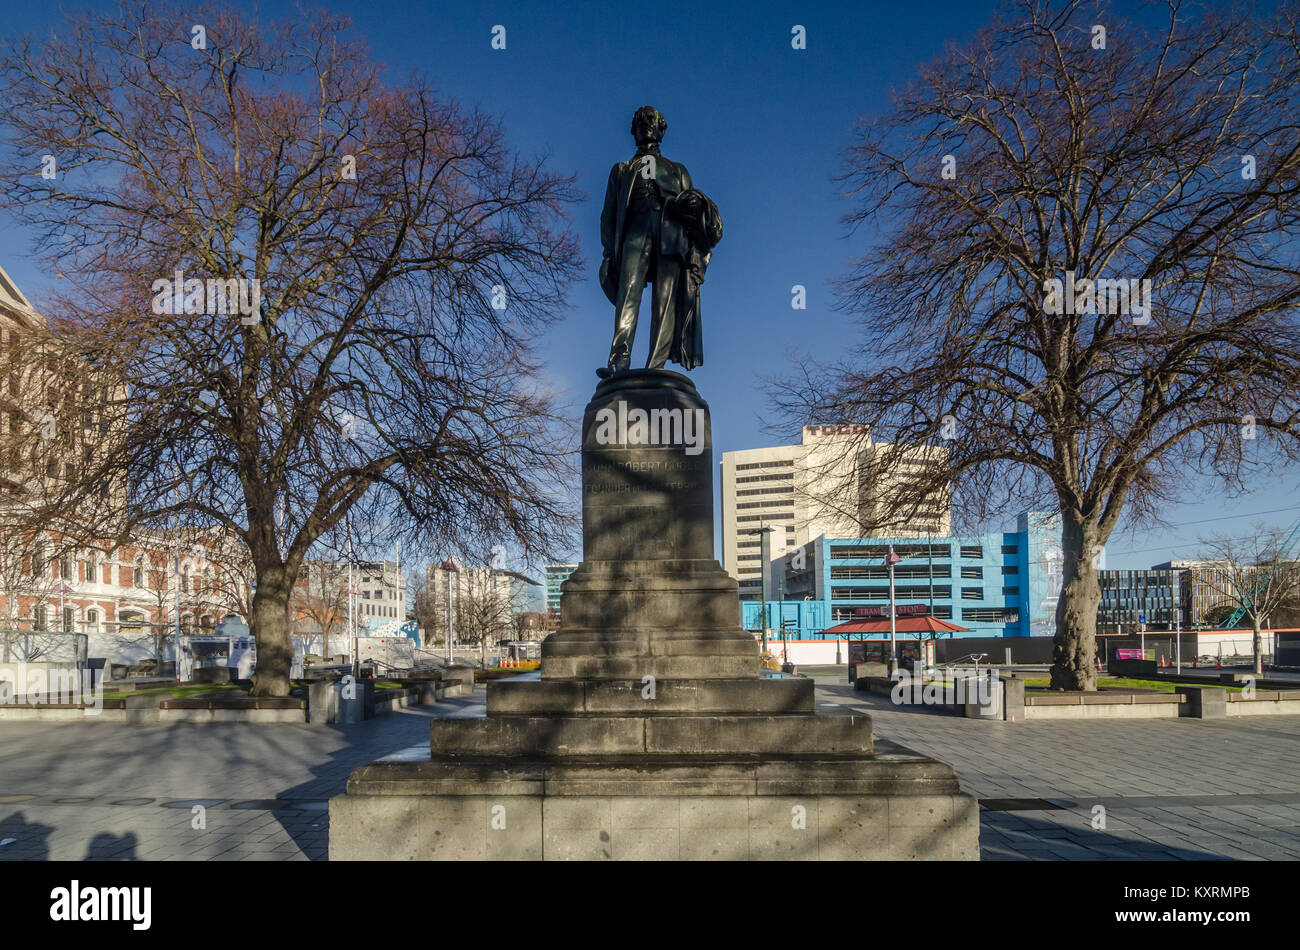 John Robert Godley Statue in Christchurch. Godley war ein irischer Politiker und Bürokraten, er gilt als der Gründer von Canterbury, Neuseeland. Stockfoto